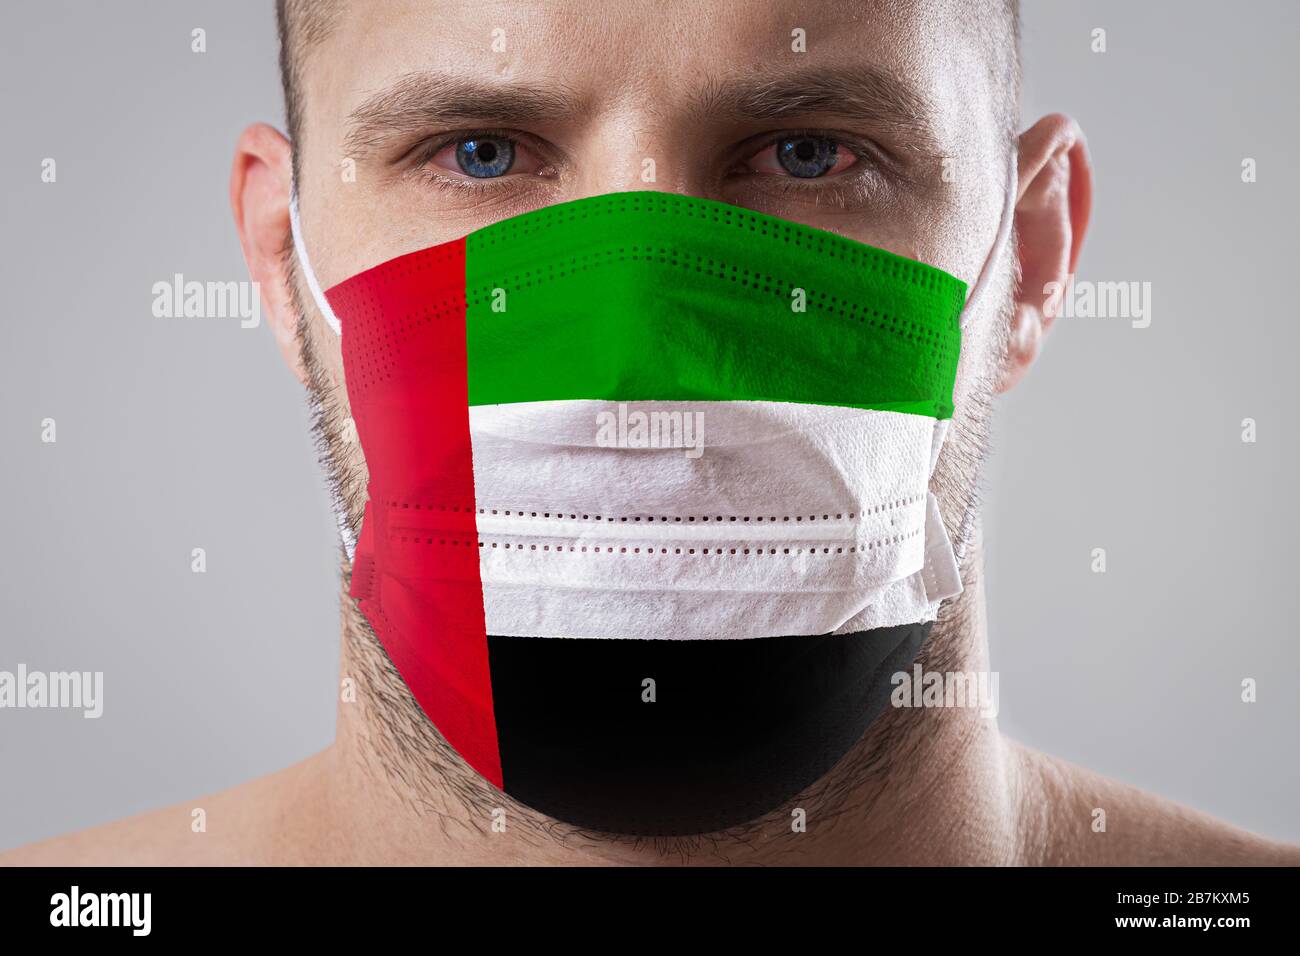 Jeune homme aux yeux douloureux dans un masque médical peint dans les couleurs du drapeau national des Émirats arabes Unis. Protection médicale contre le dis Banque D'Images